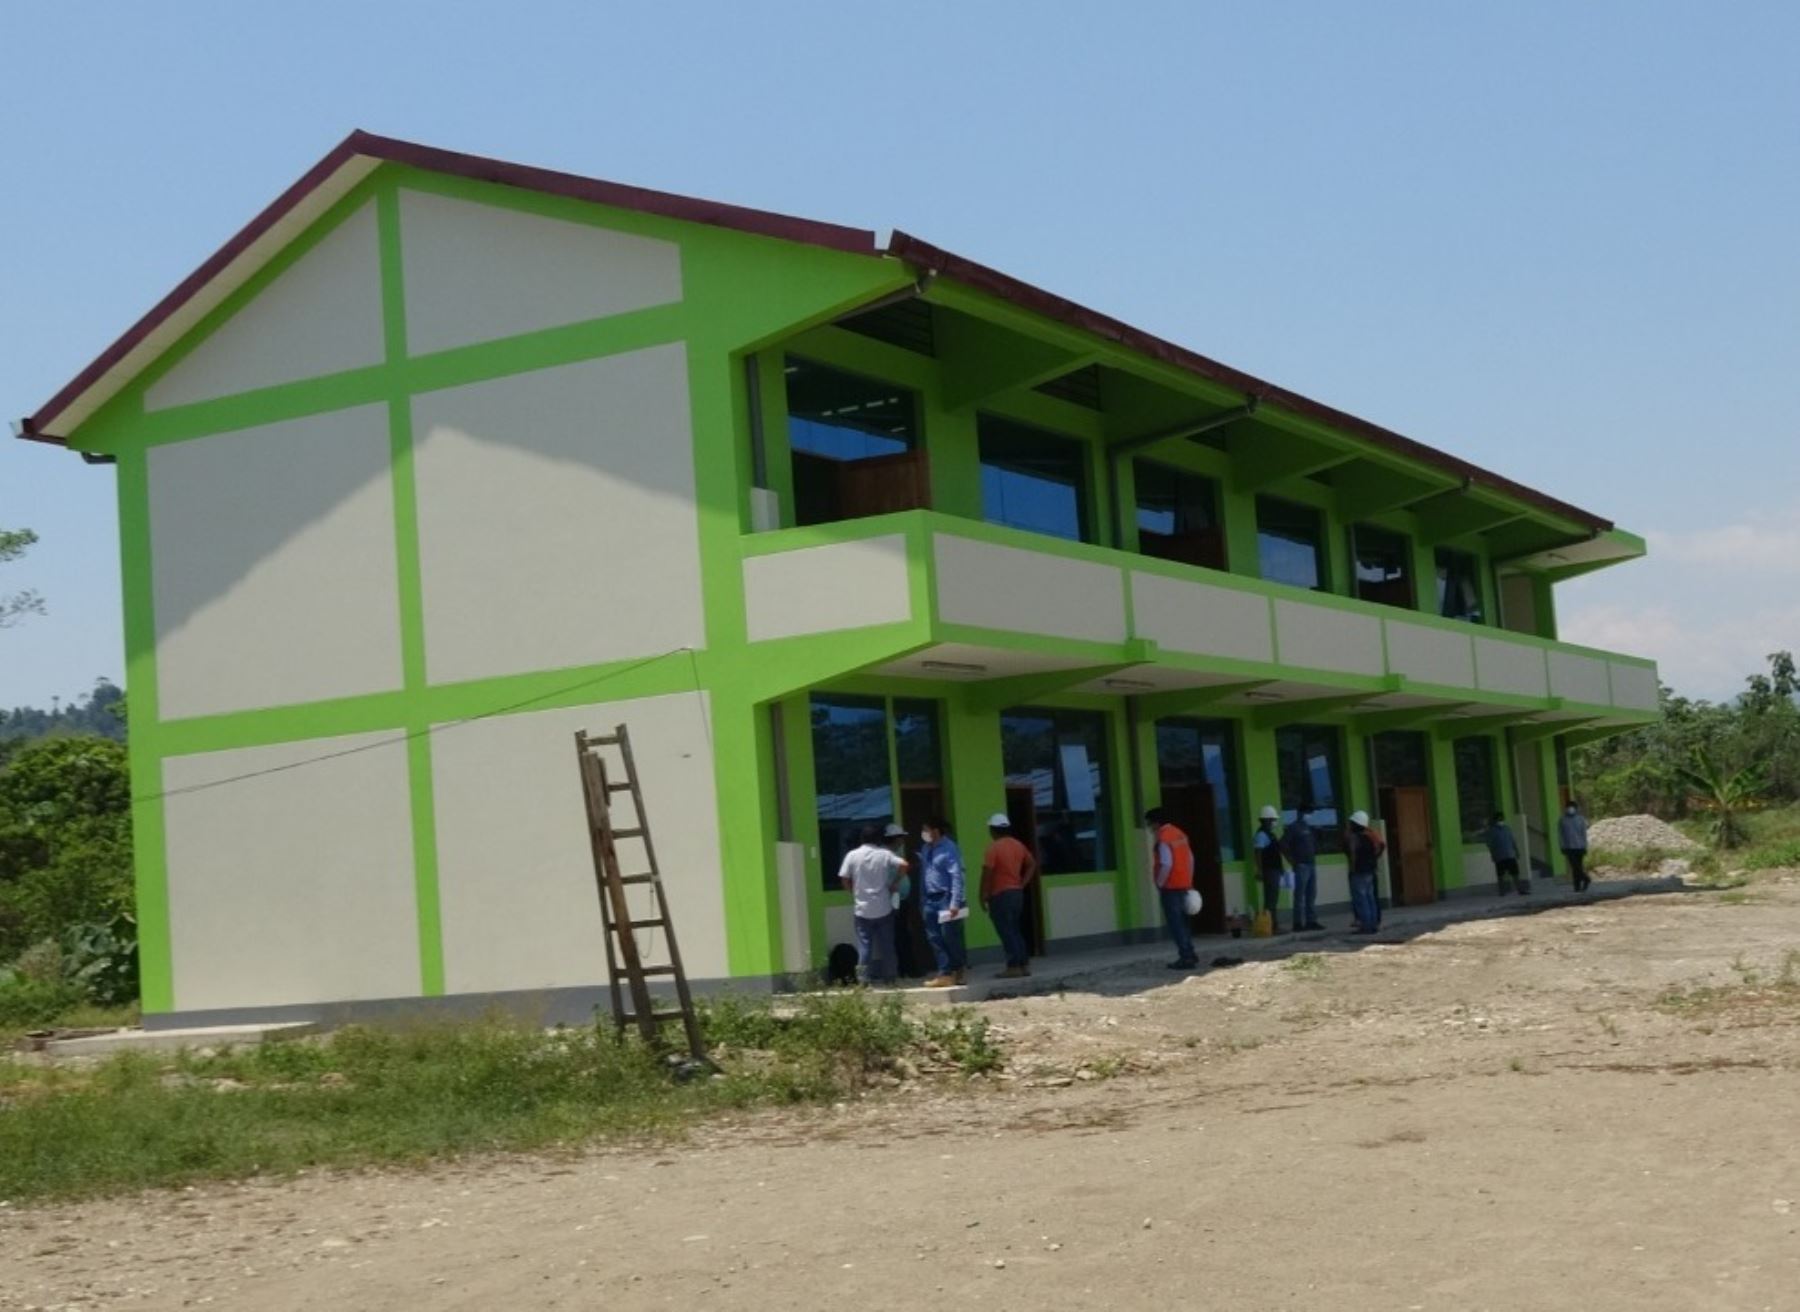 Municipalidad de Pangoa entrega nuevo colegio en comunidad indígena asháninka Yaviro, ubicada en ese distrito, que beneficia a más de 200 estudiantes de nivel secundario.